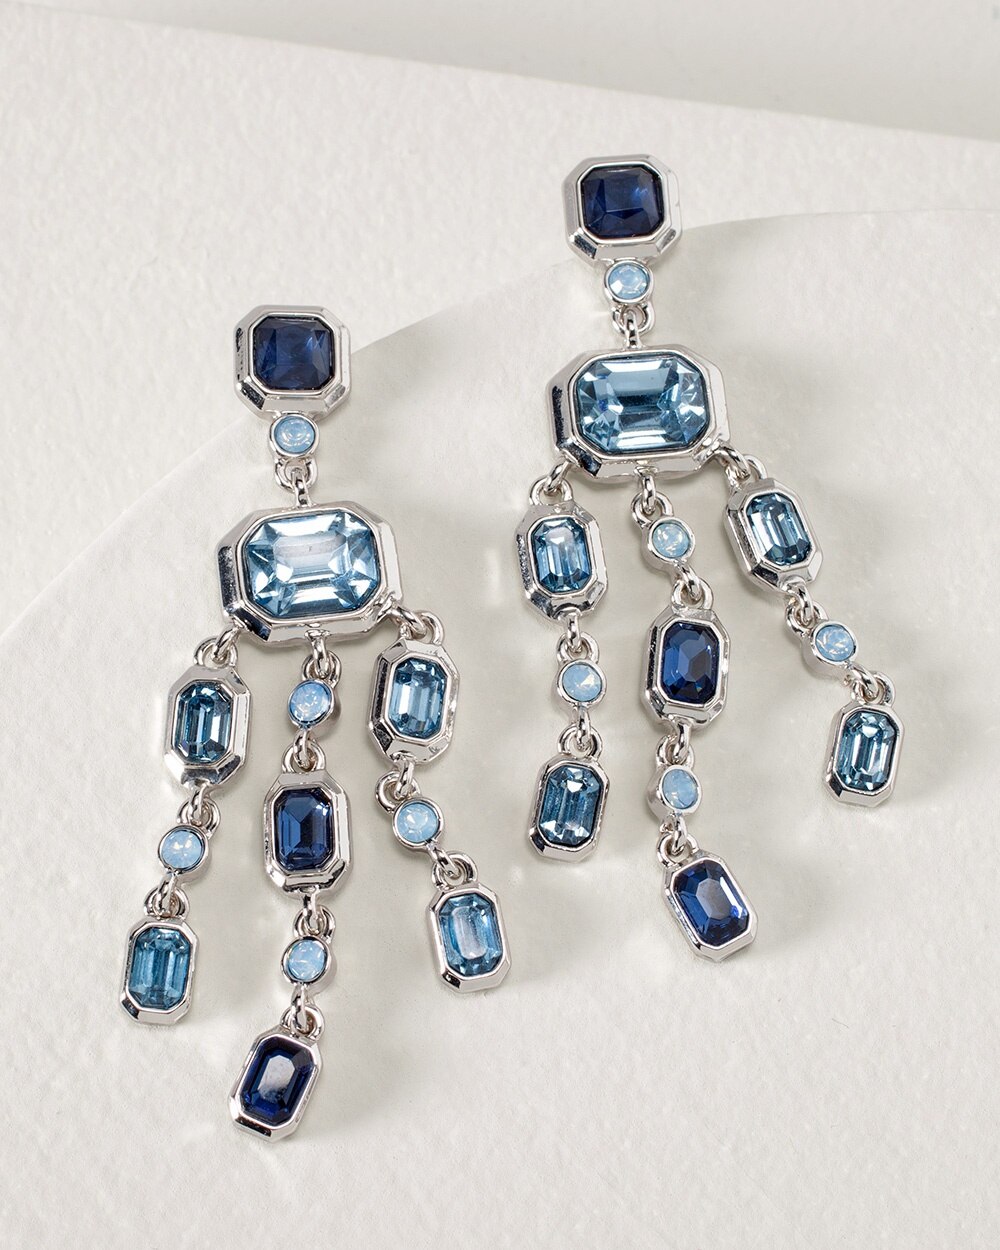 Silvertone Blue Chandelier Earrings, White House Black Market Beaded Chandelier Earrings